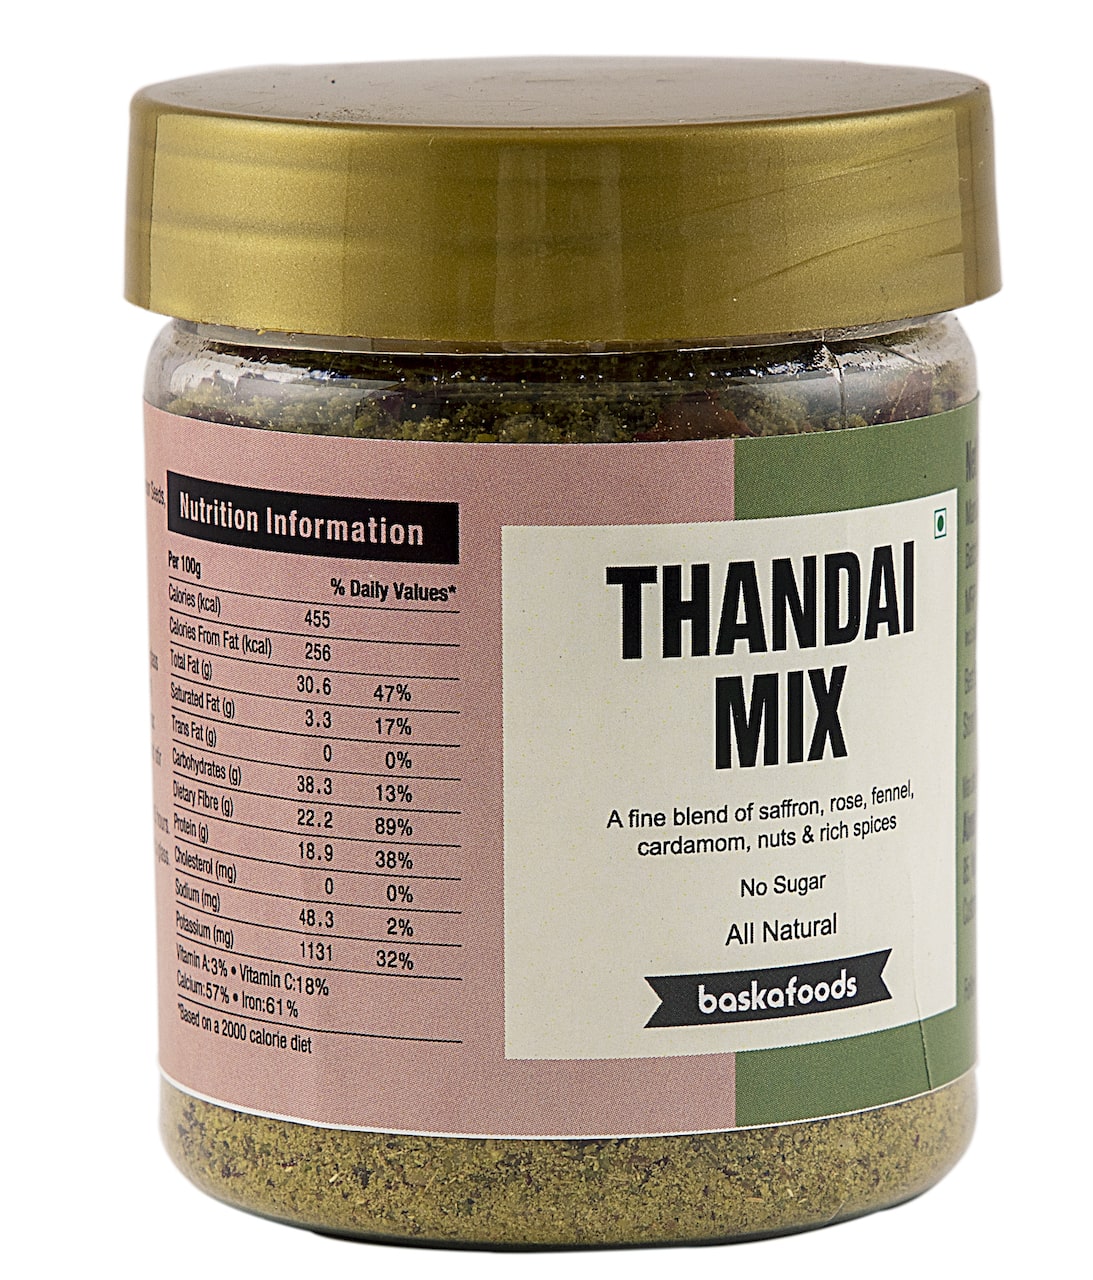 Thandai Mix